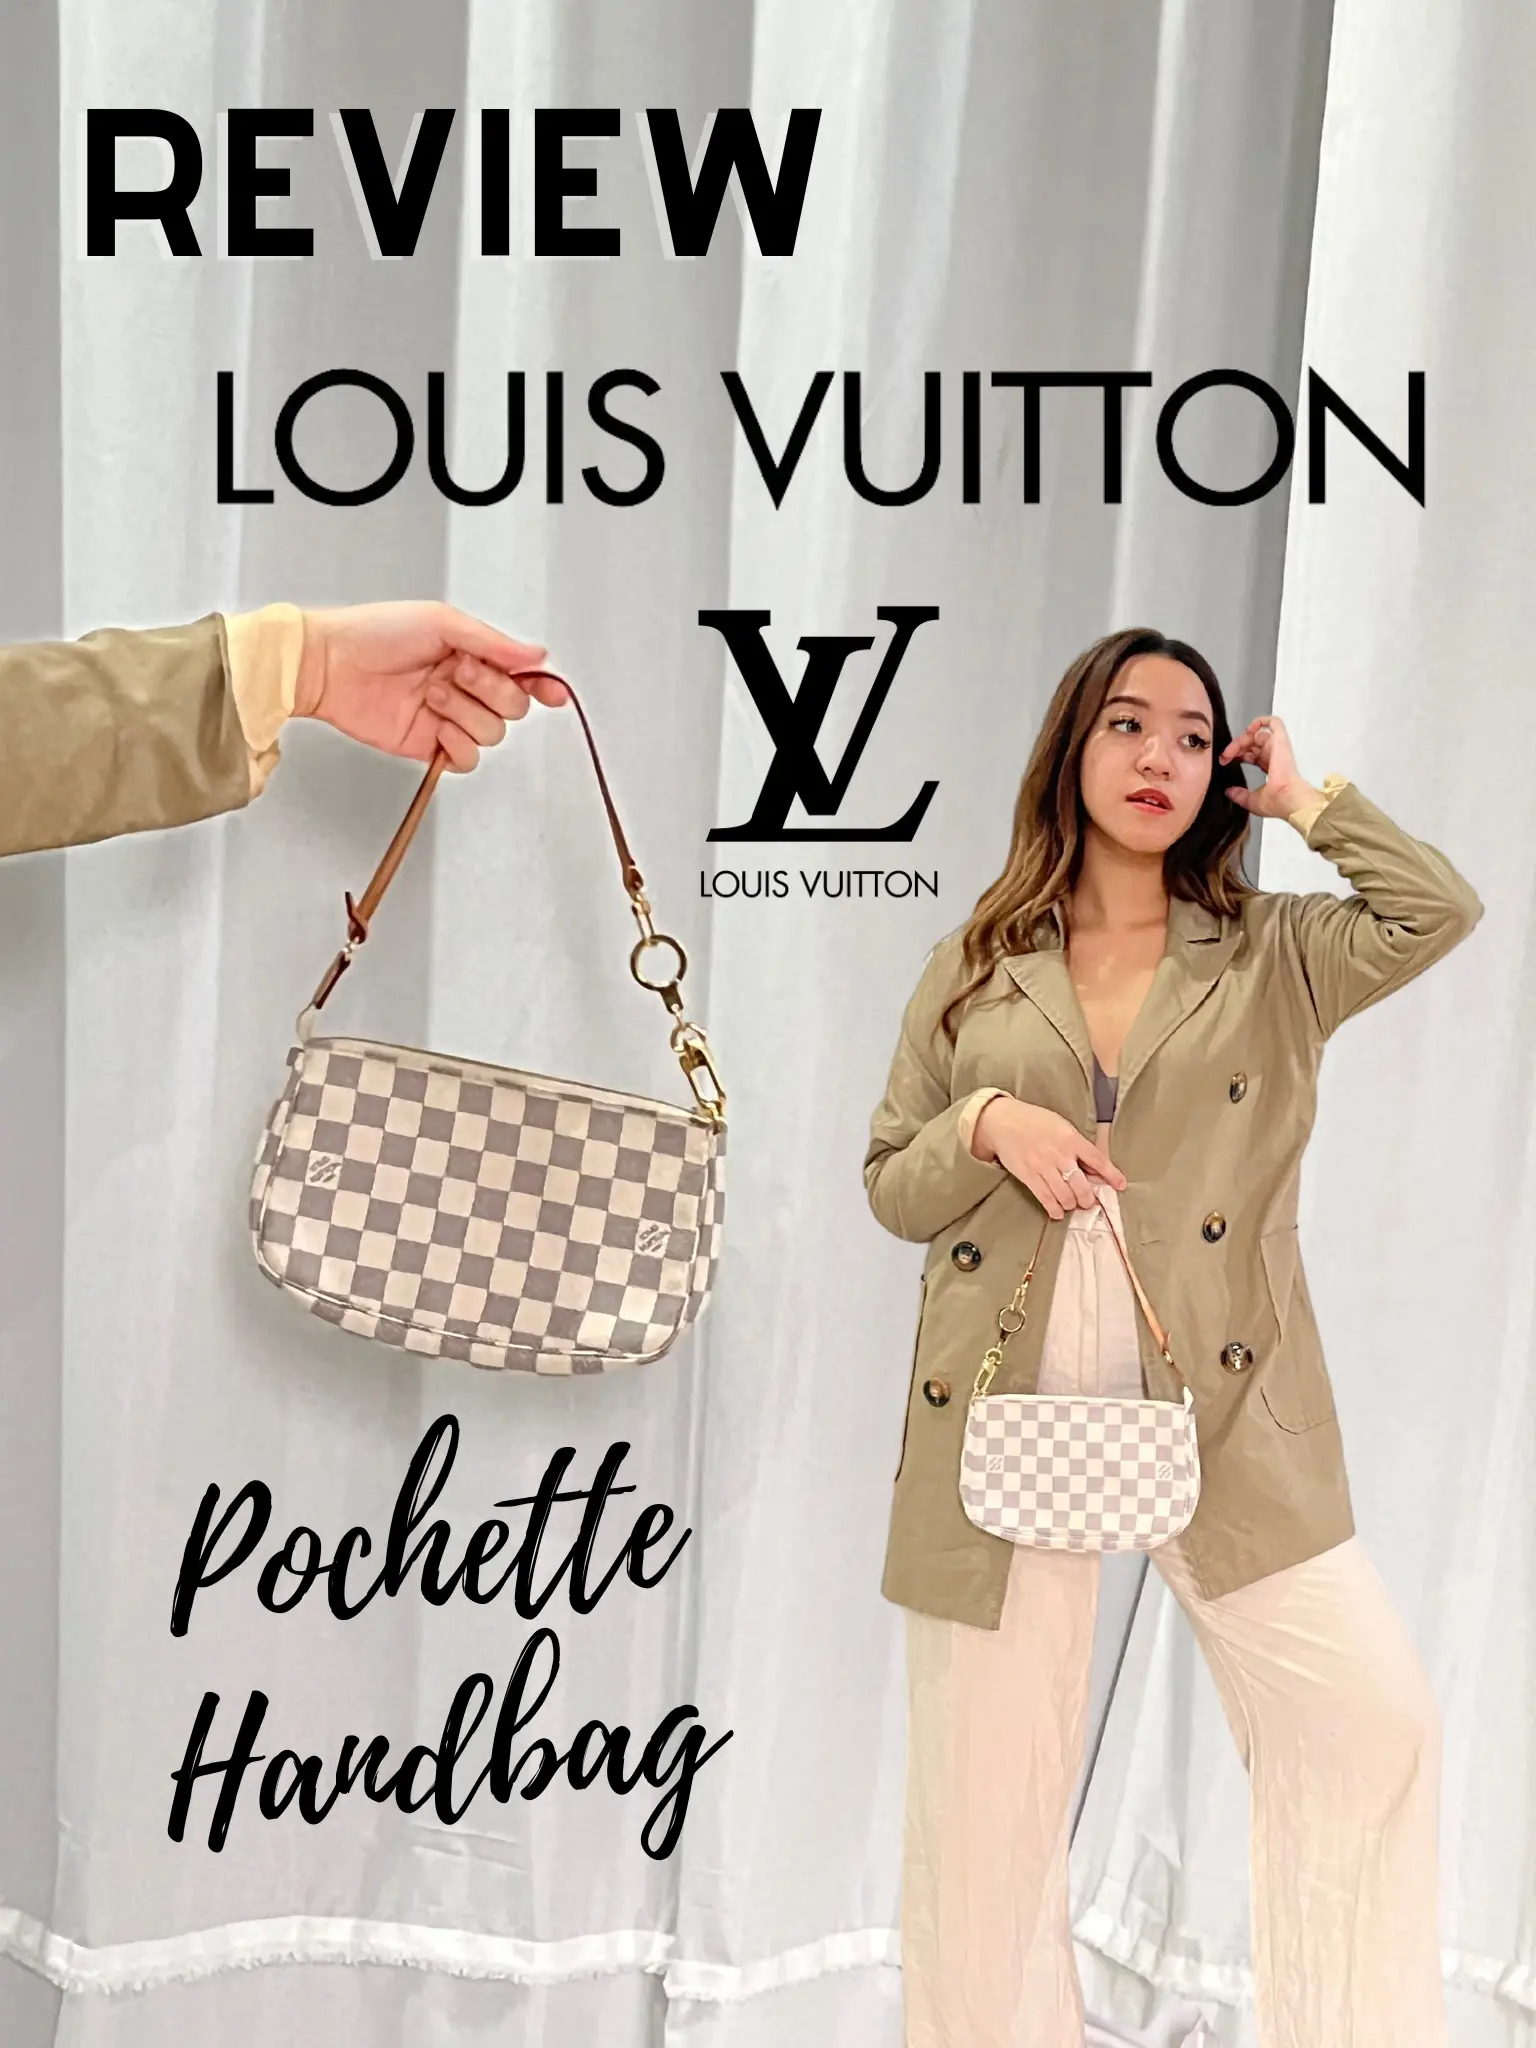 Review Louis Vuitton Pochette Hand bag, Galeri disiarkan oleh  karishaizzati